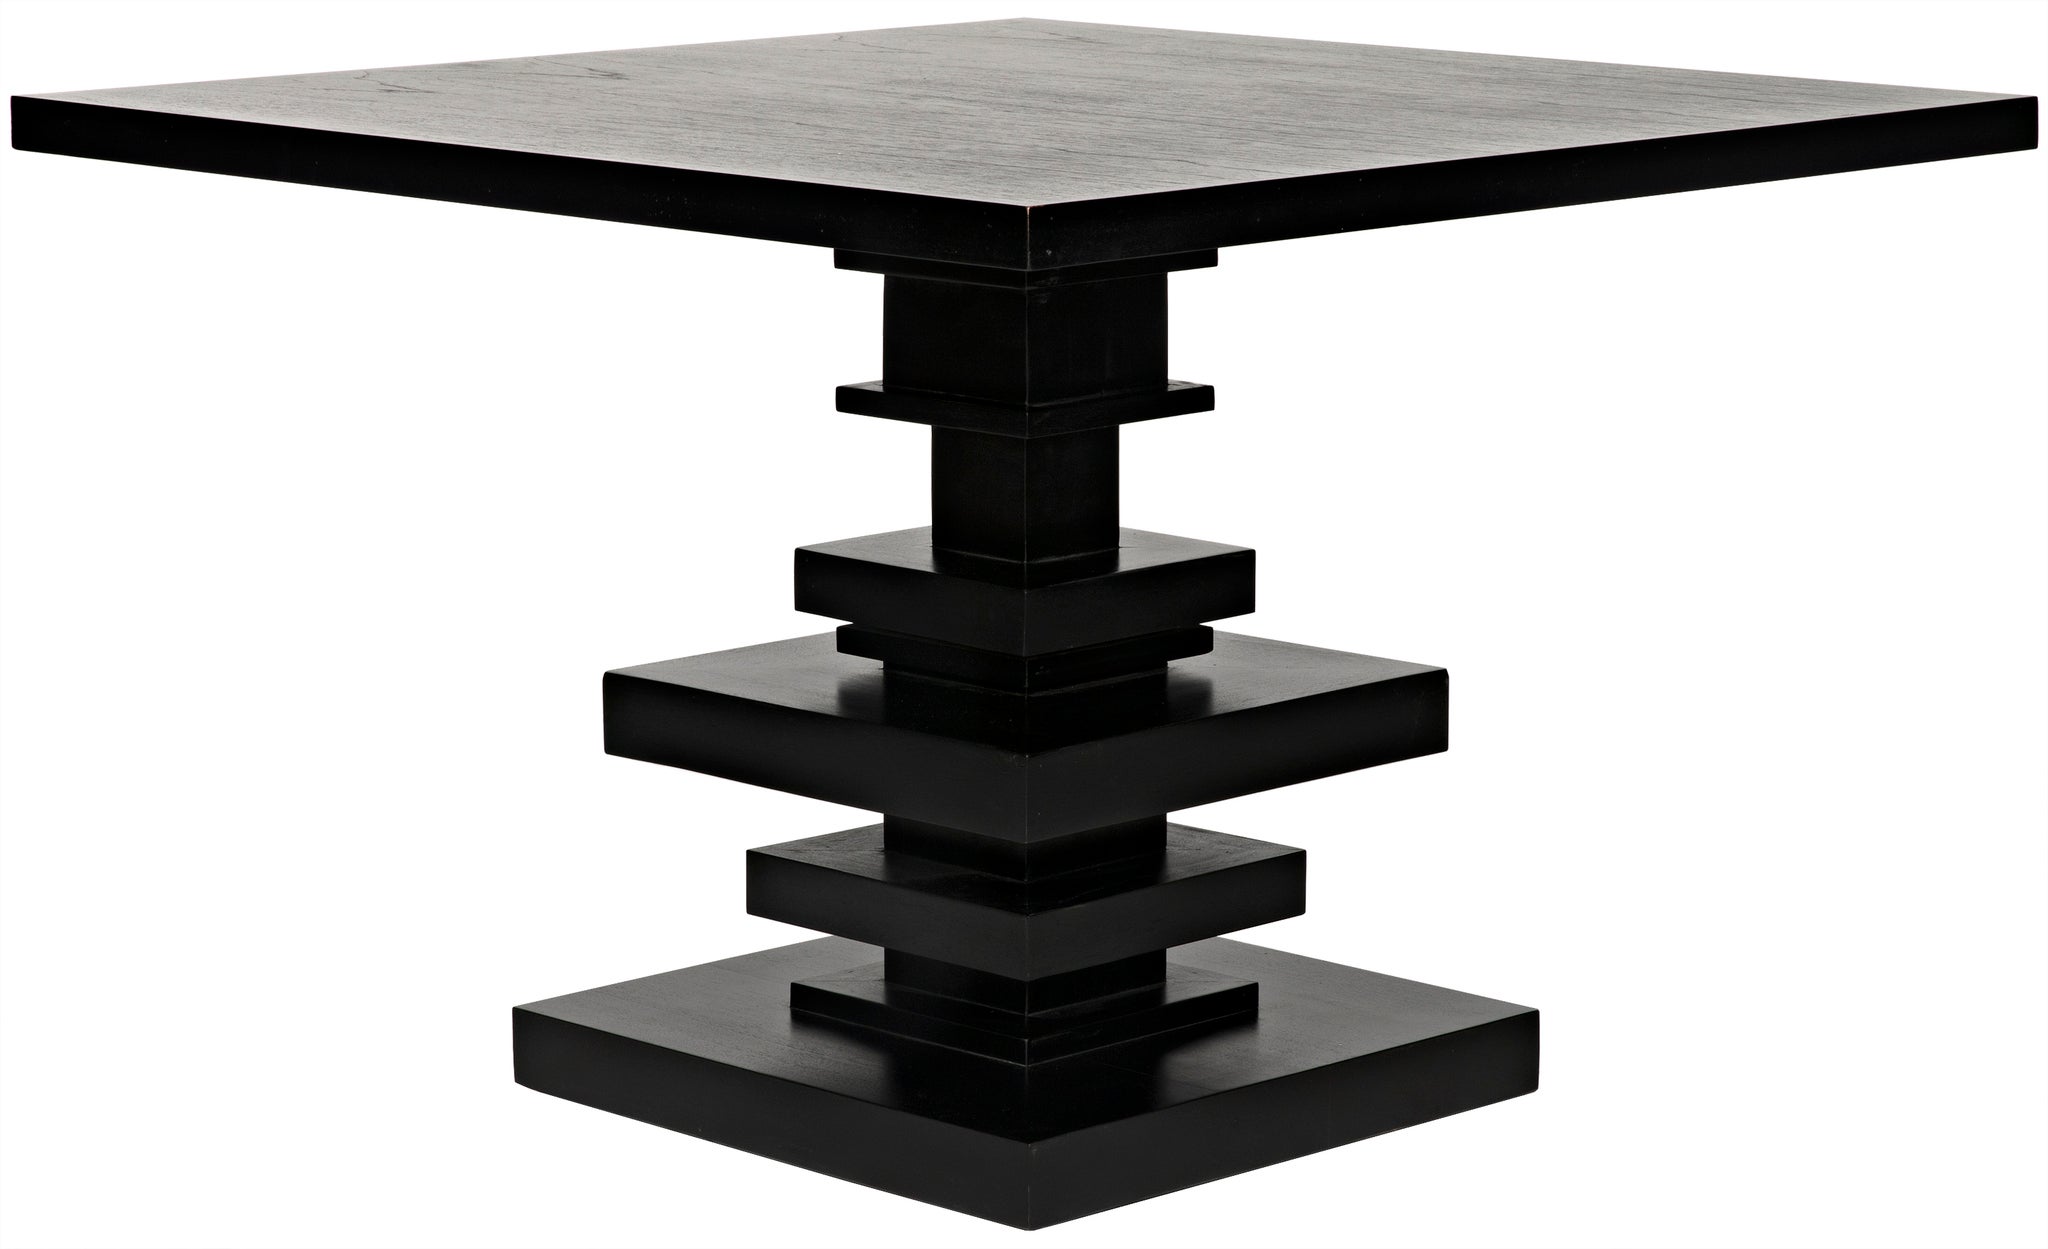 Table Skast noire 100x60 cm sur piétement chromé - Selsey